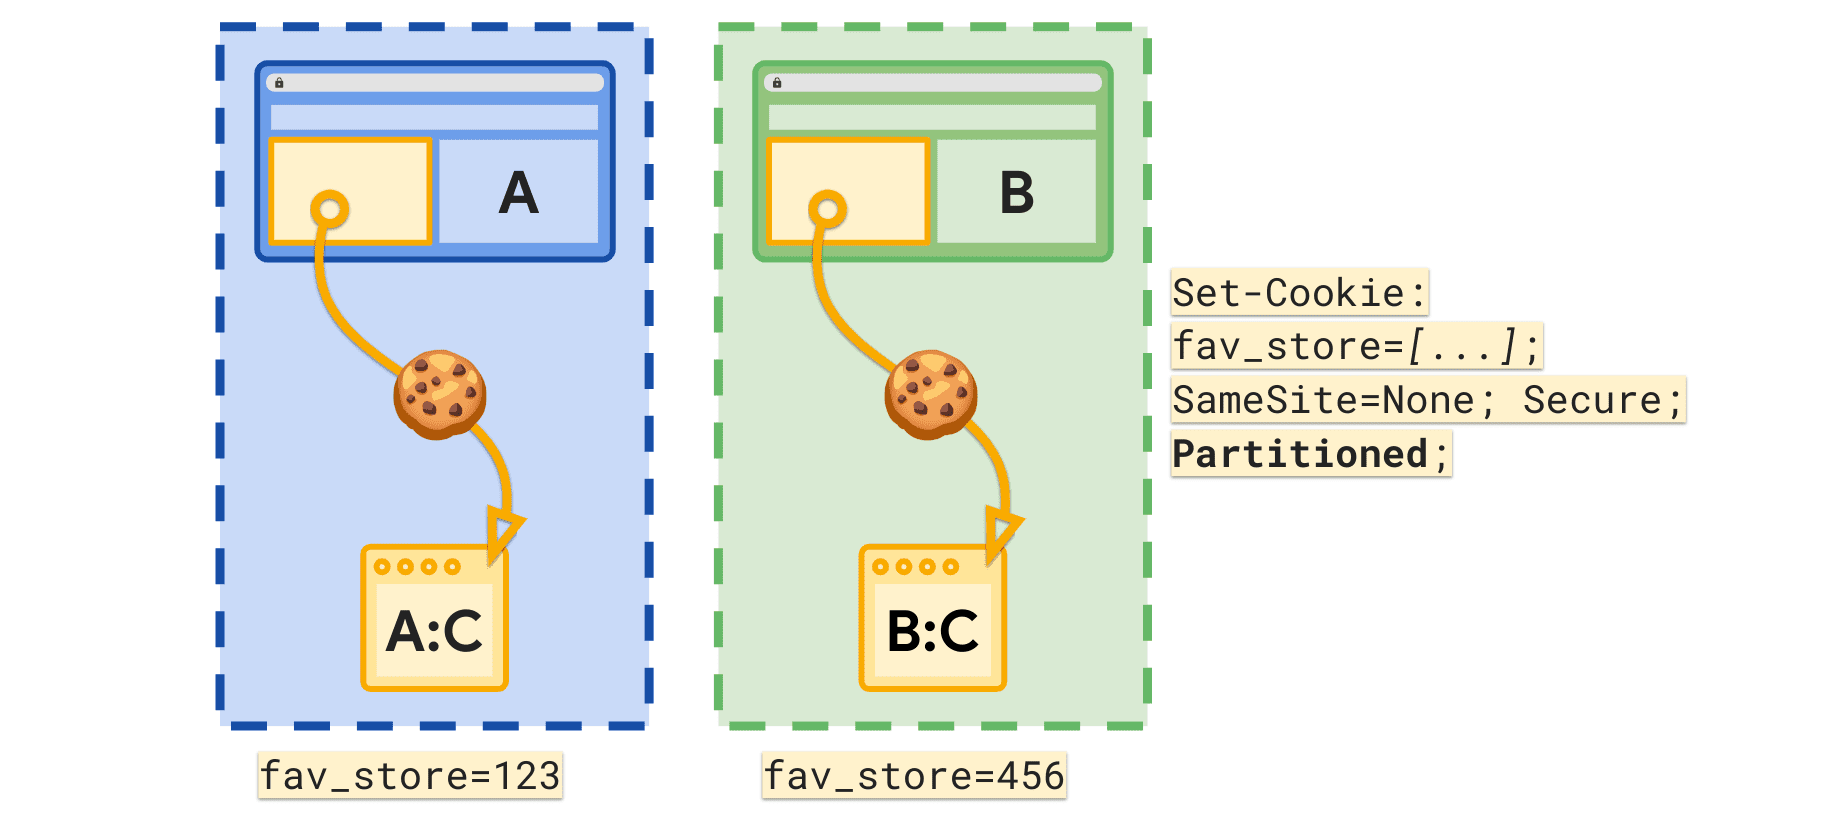 पार्टिशन्ड एट्रिब्यूट की मदद से, हर टॉप लेवल साइट के लिए एक अलग fav_store कुकी सेट की जा सकती है.